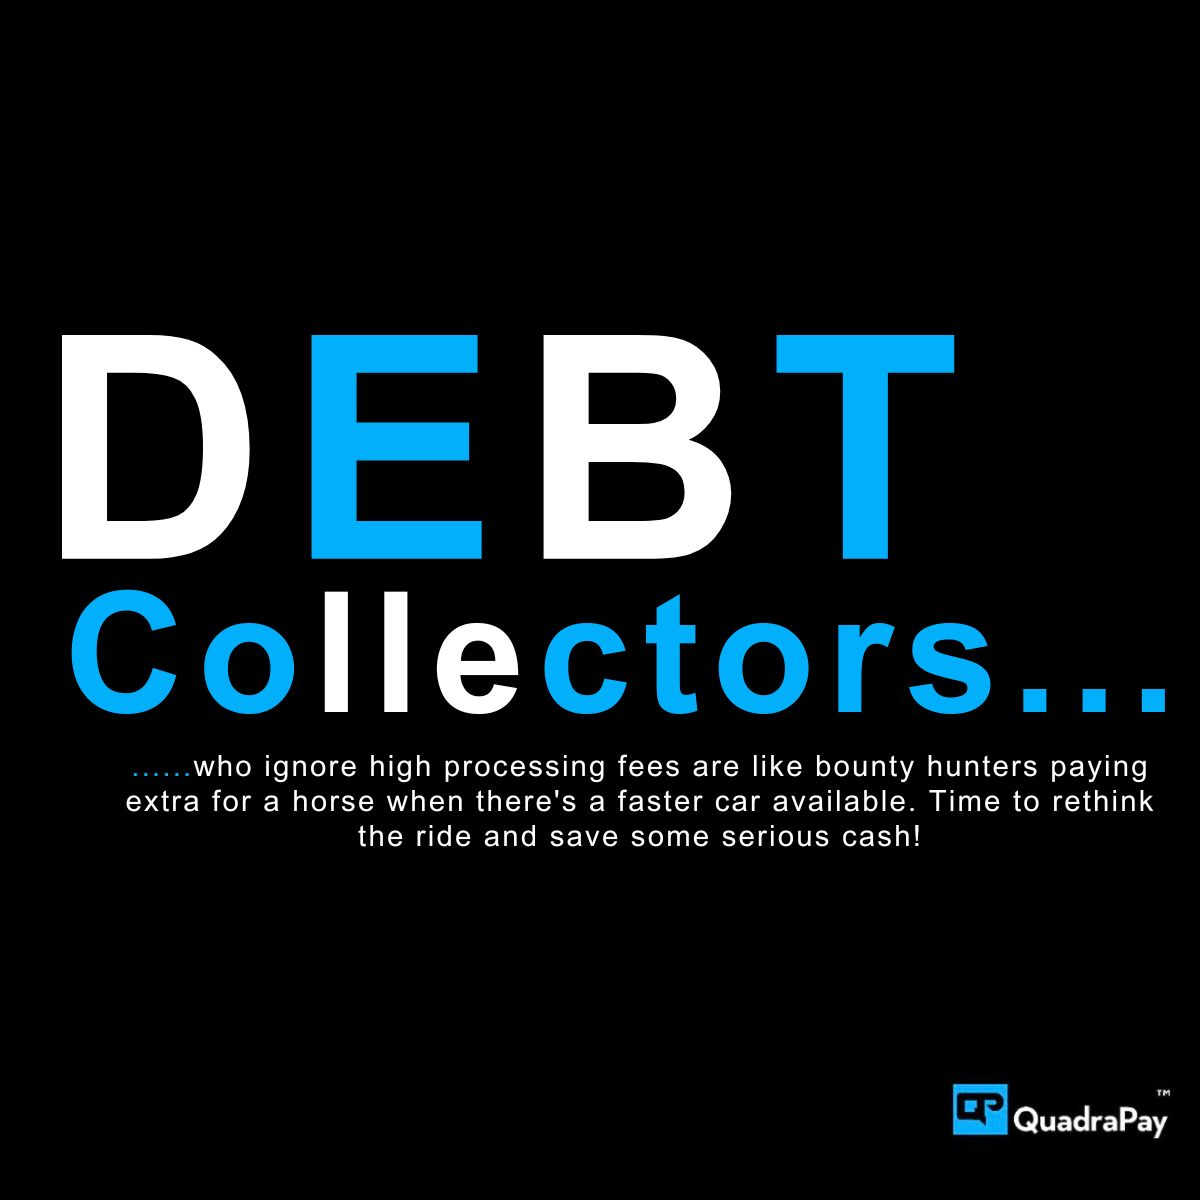 #DebtServices #DebtControl #DebtConsolidation #DebtCollector #DebtCollections #DebtFree #DebtCrisis #DebtLaw #DebtEnforcement #DebtPayment #DebtIndustry #DebtClearance #DebtCounseling #DebtPlanning #DebtCollectionSpecialists